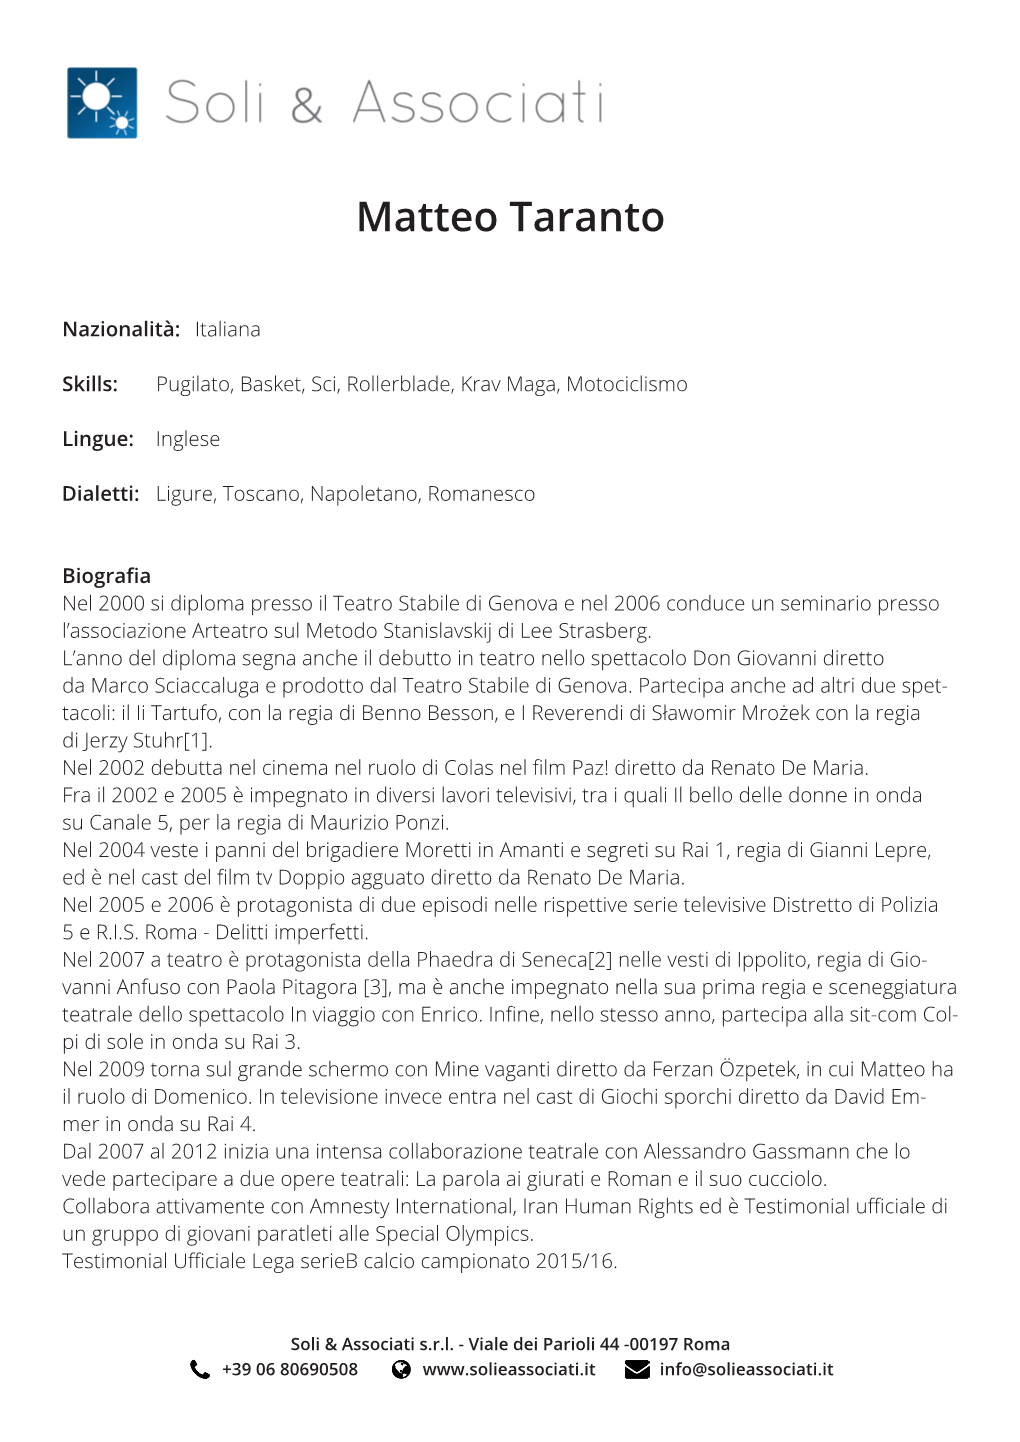 Matteo Taranto